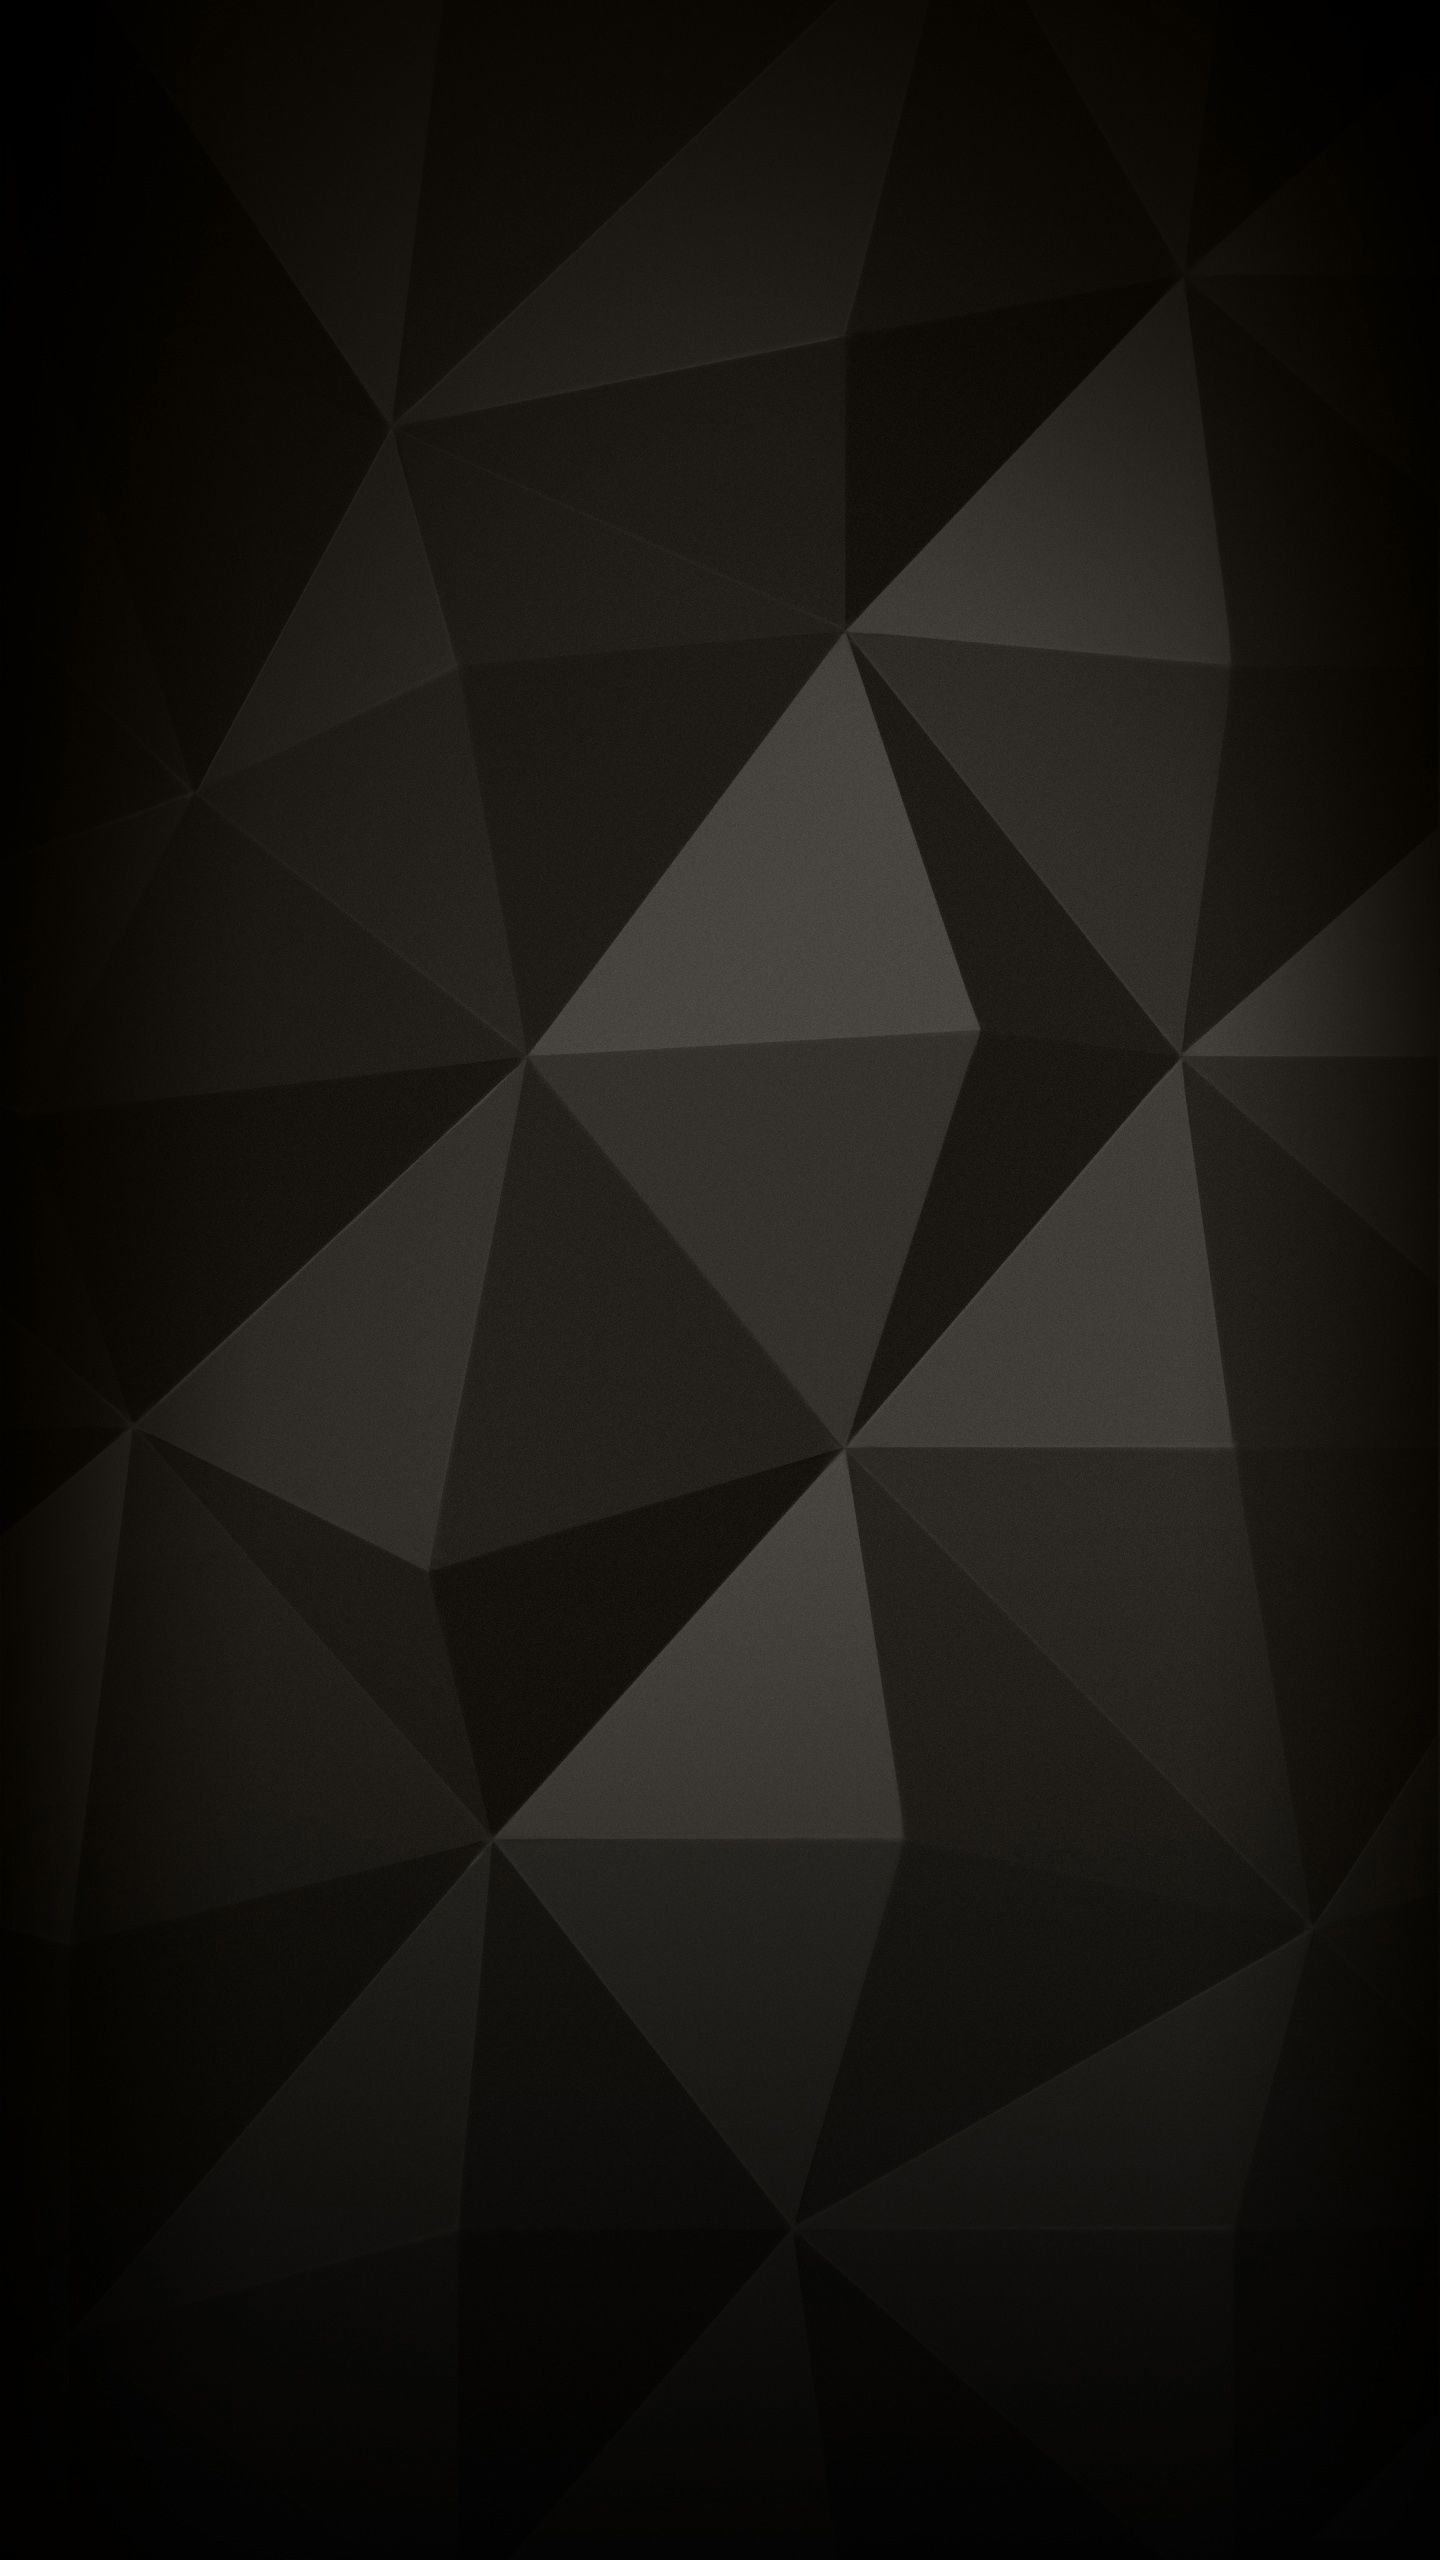 Abstract Phone Backgrounds Download | PixelsTalk.Net